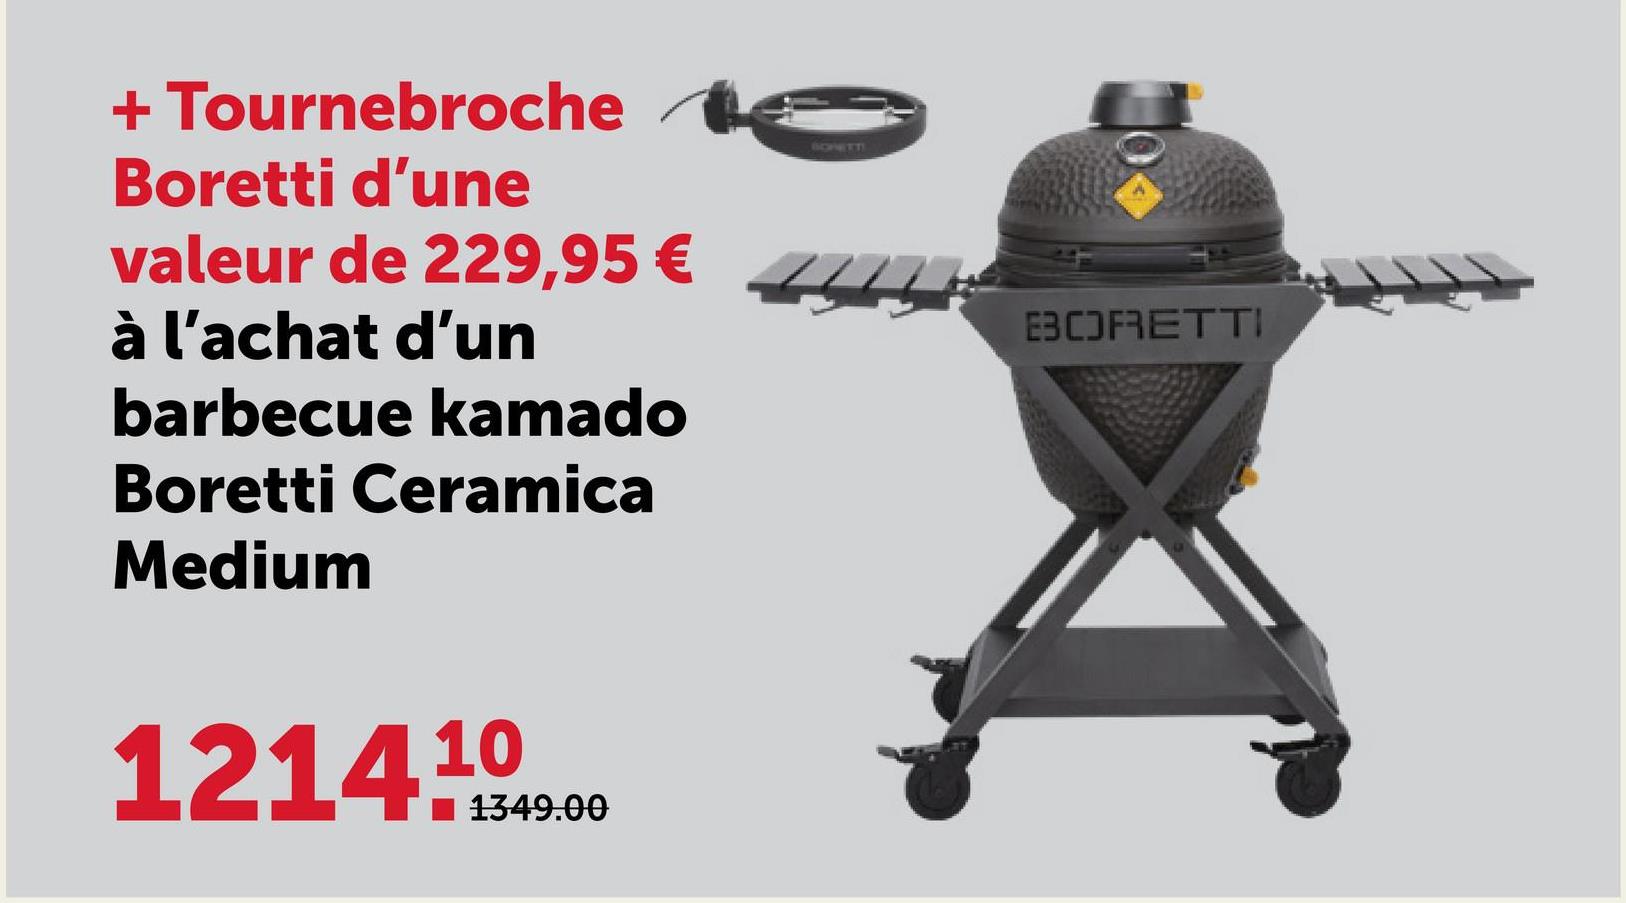 + Tournebroche
Boretti d'une
valeur de 229,95 €
à l'achat d'un
barbecue kamado
Boretti Ceramica
Medium
1214
10
1349.00
SONETTI
EBCOFRETTI